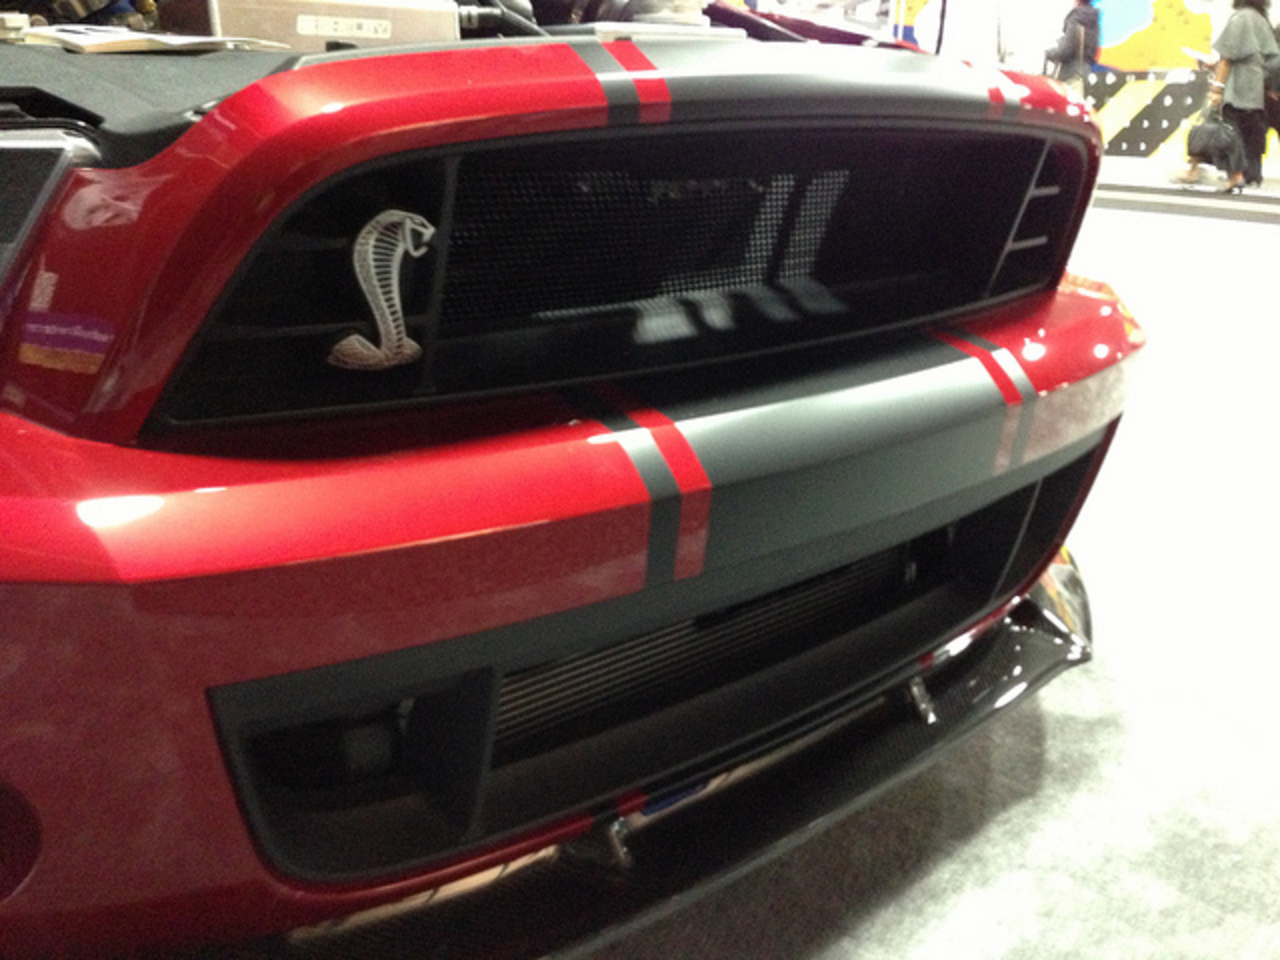 Shelby GT 500 Super Snake 2013 à NAIAS 2013 / Flickr - Partage de photos!